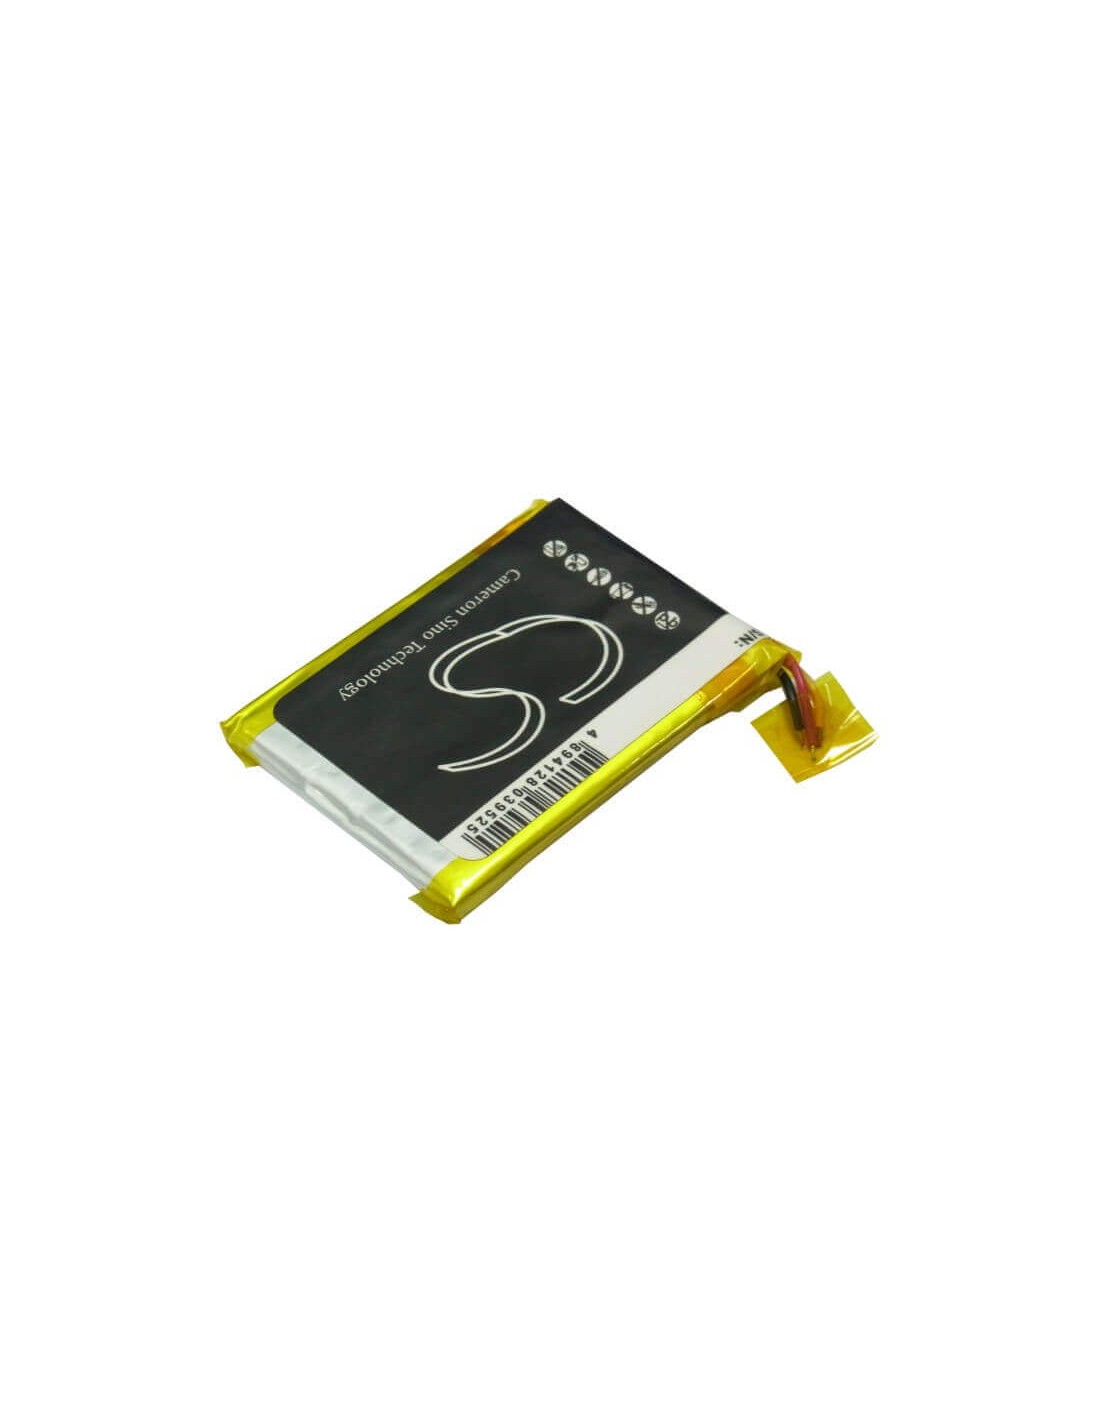 Battery for Archos 28 Internet Tablet, 8100 3.7V, 800mAh - 2.96Wh